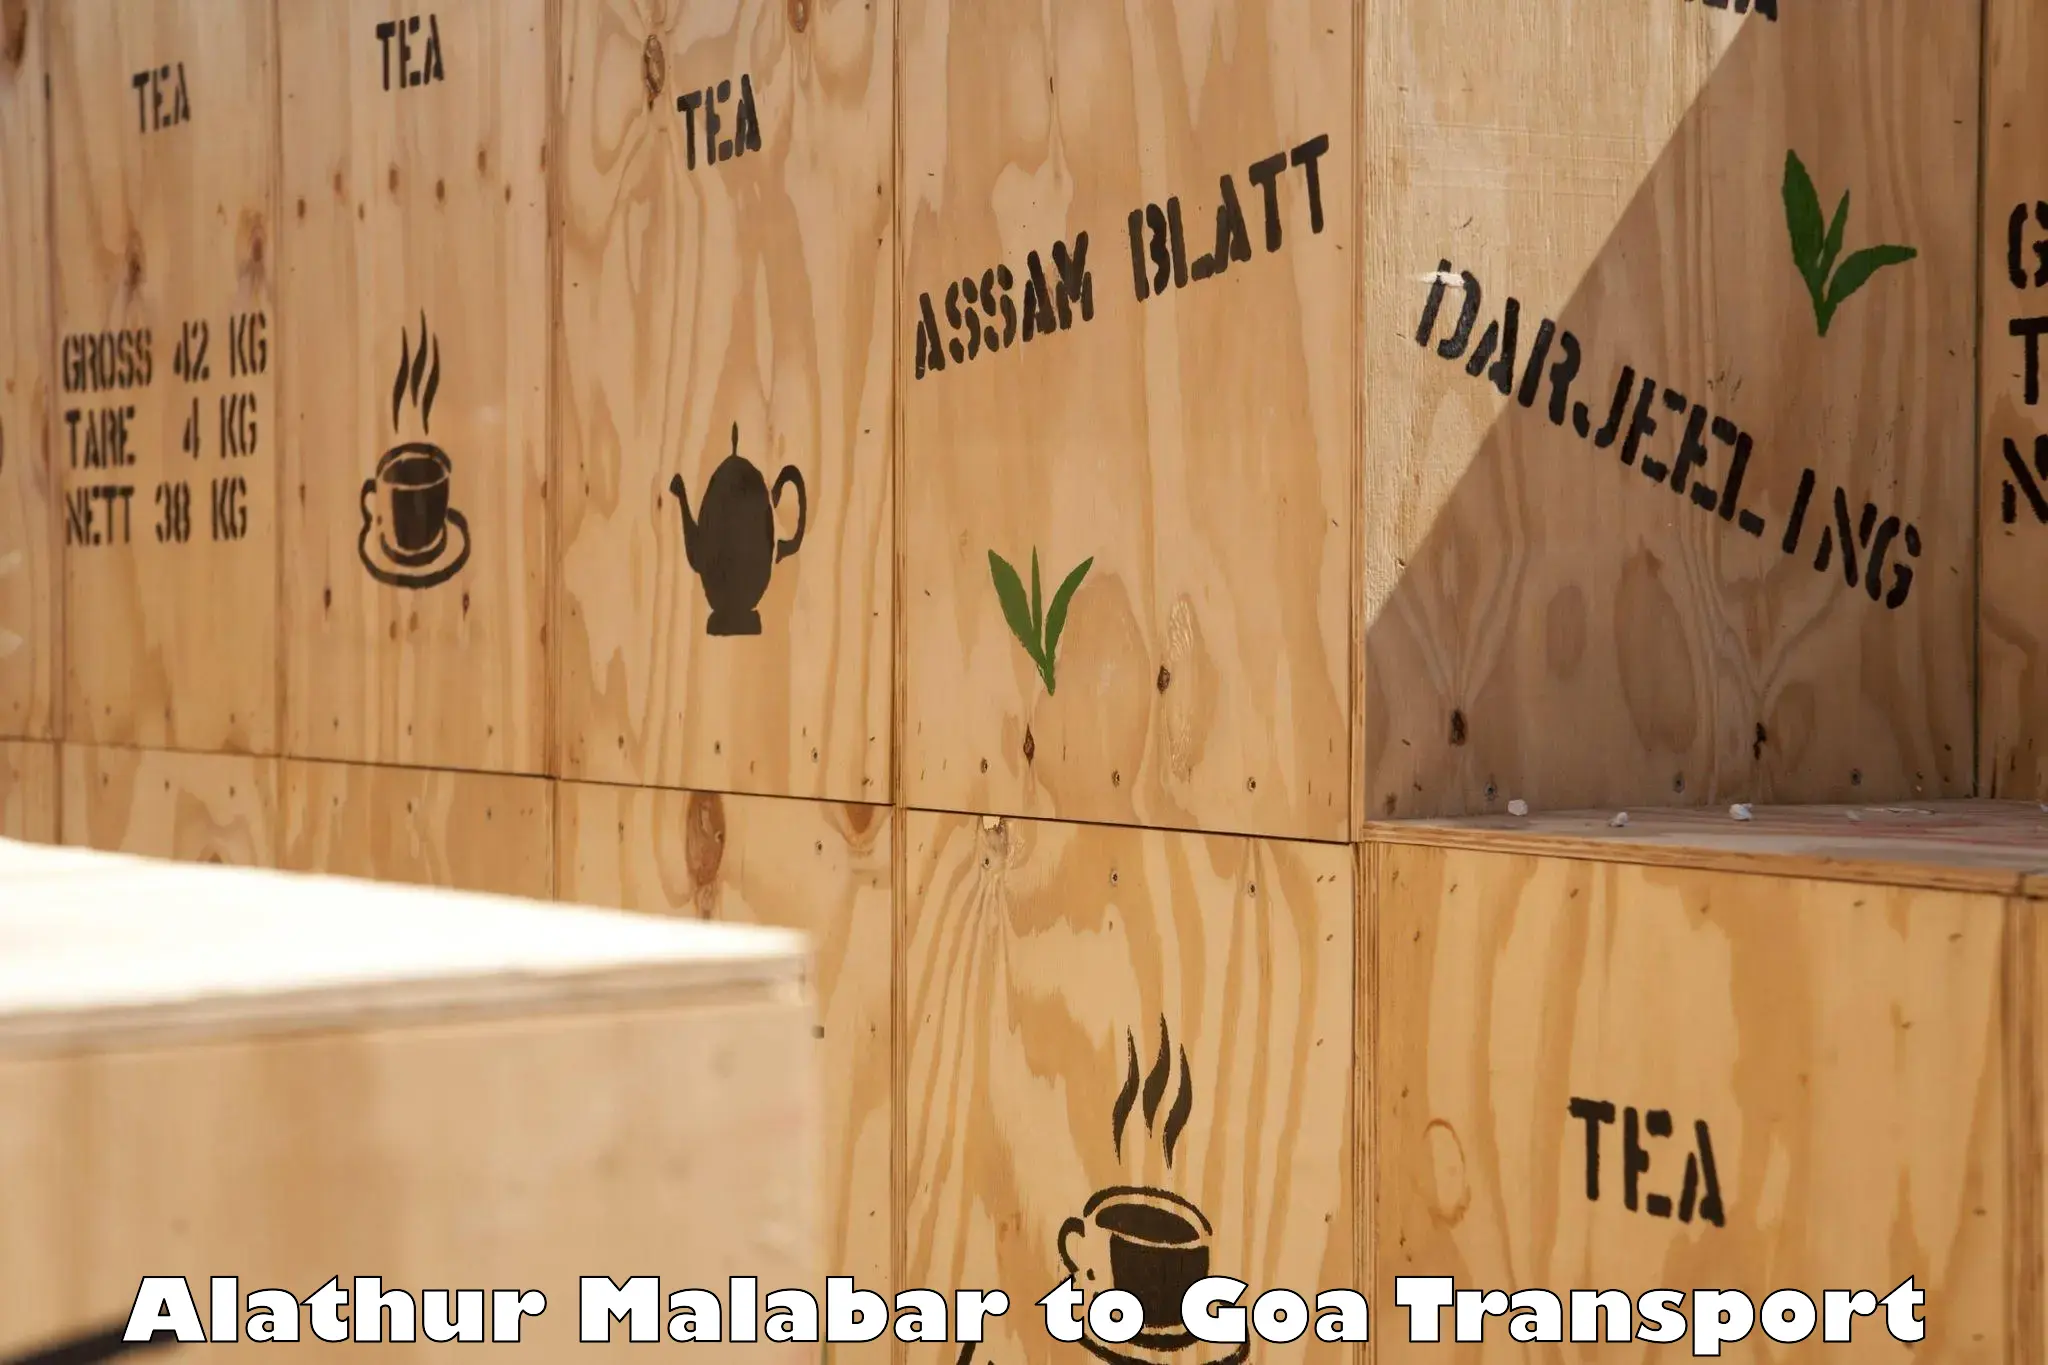 Commercial transport service Alathur Malabar to Panjim